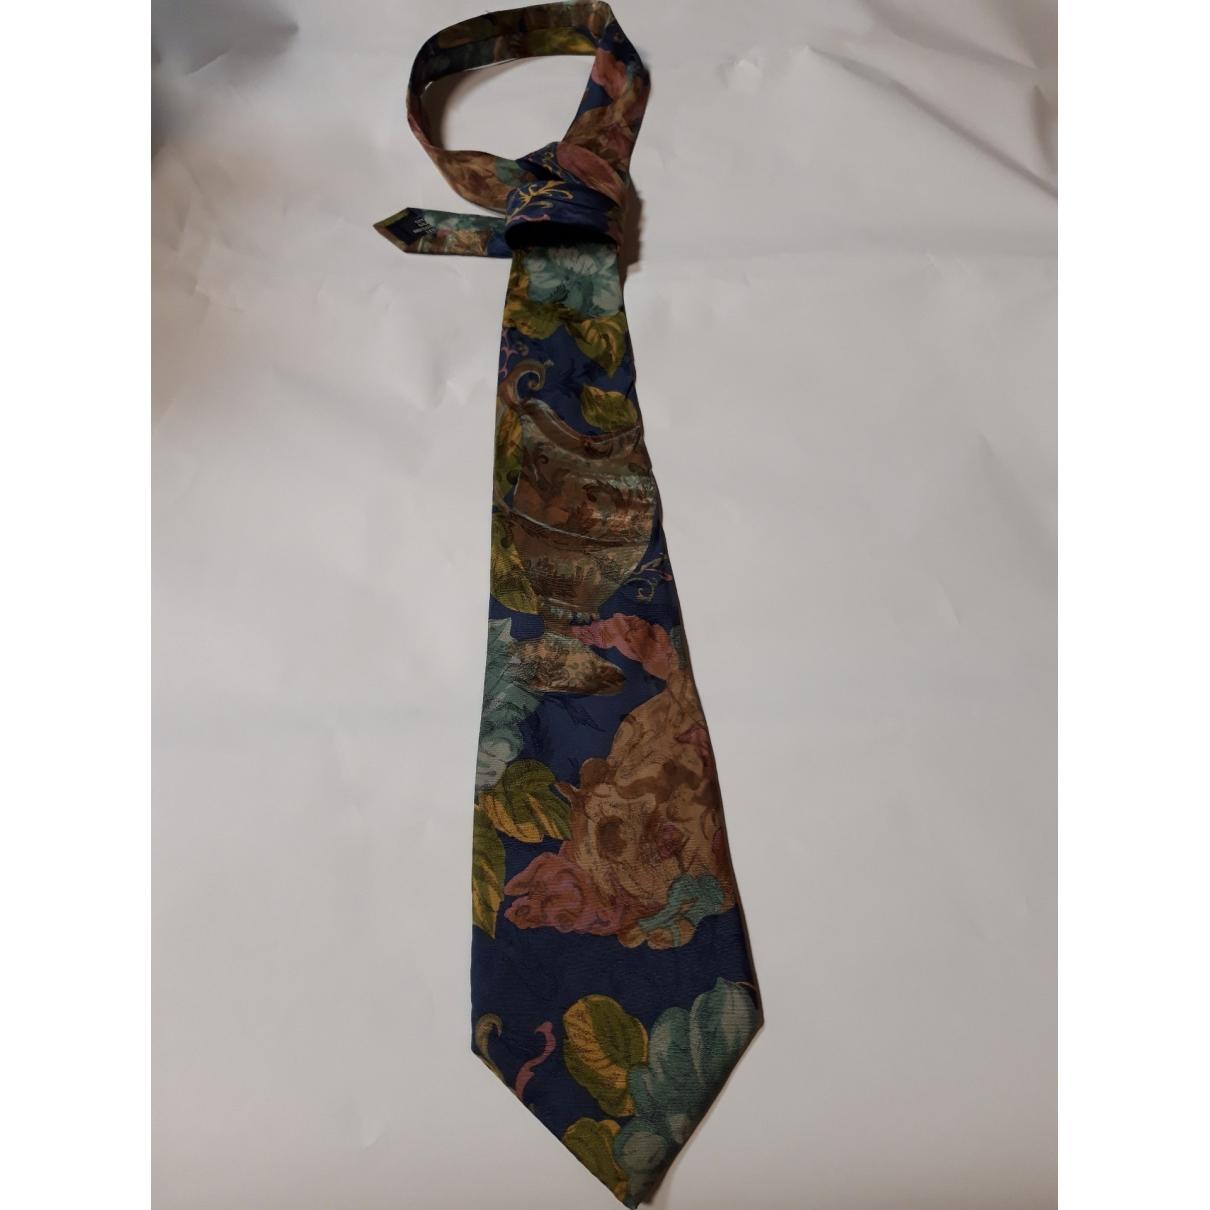 Buy Guy Laroche Silk tie online